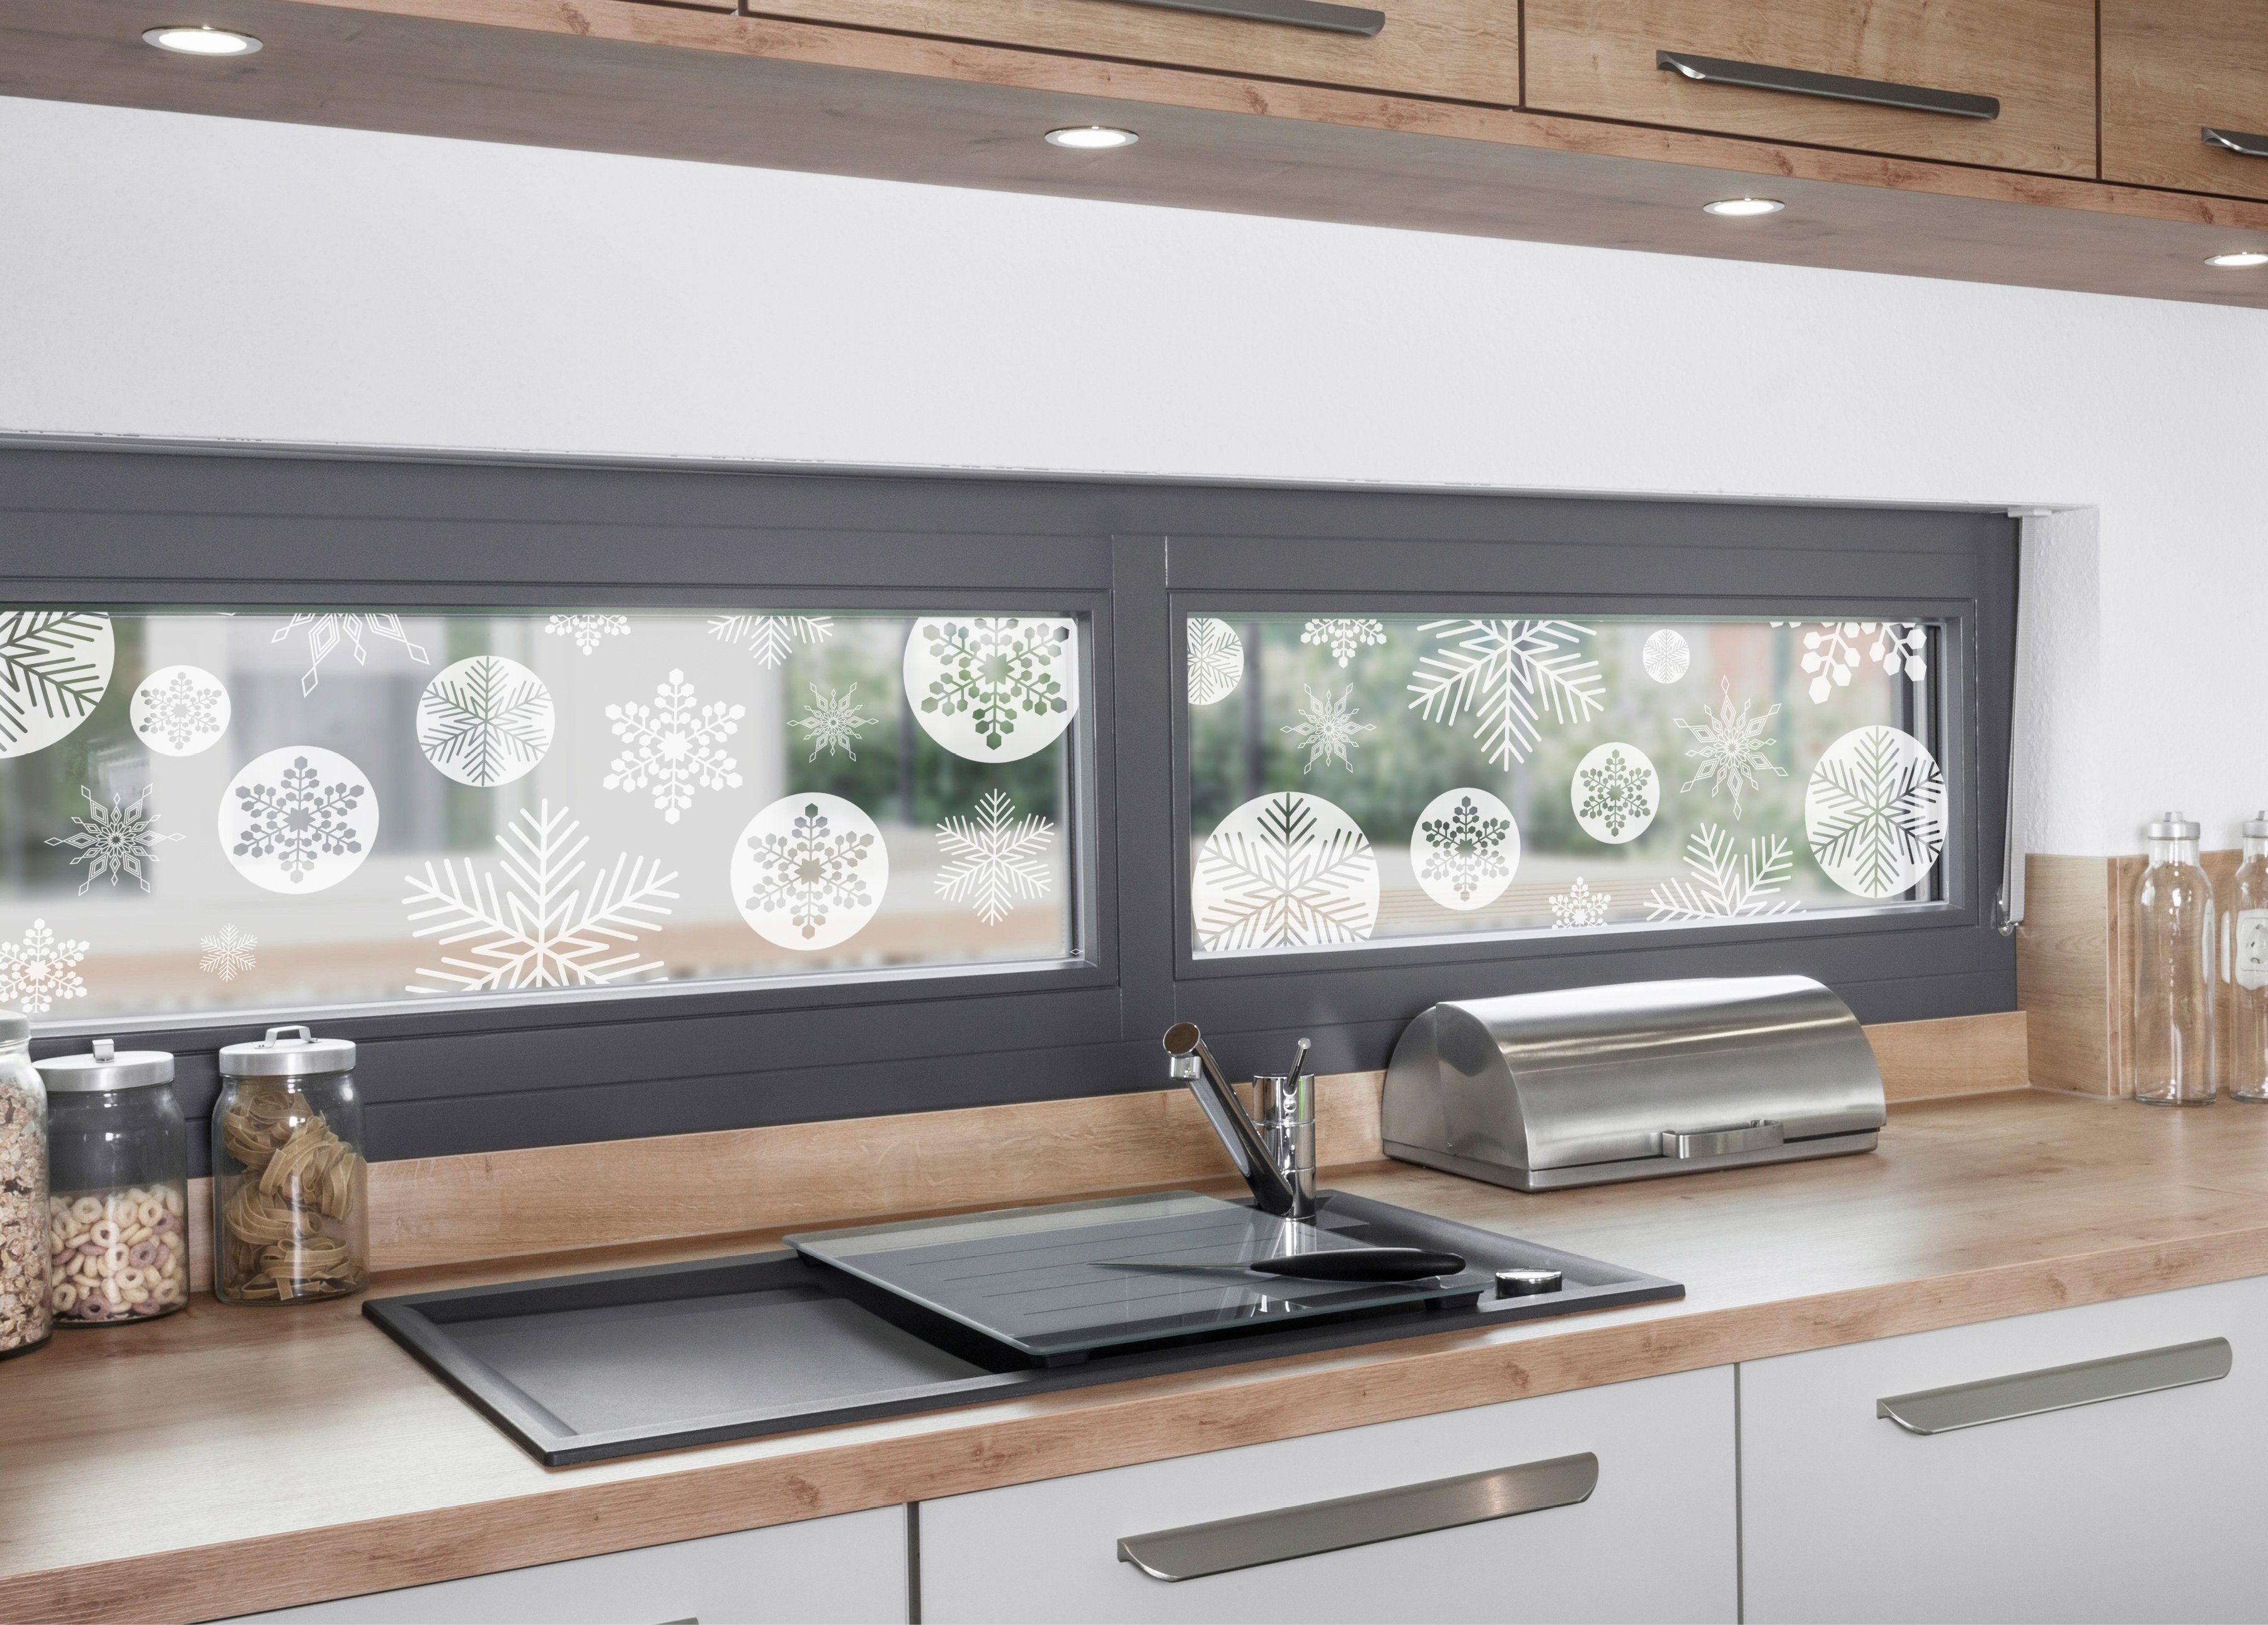 Fensterfolie Look Snowy white, MySpotti, halbtransparent, statisch x 200 haftend glatt, cm, 30